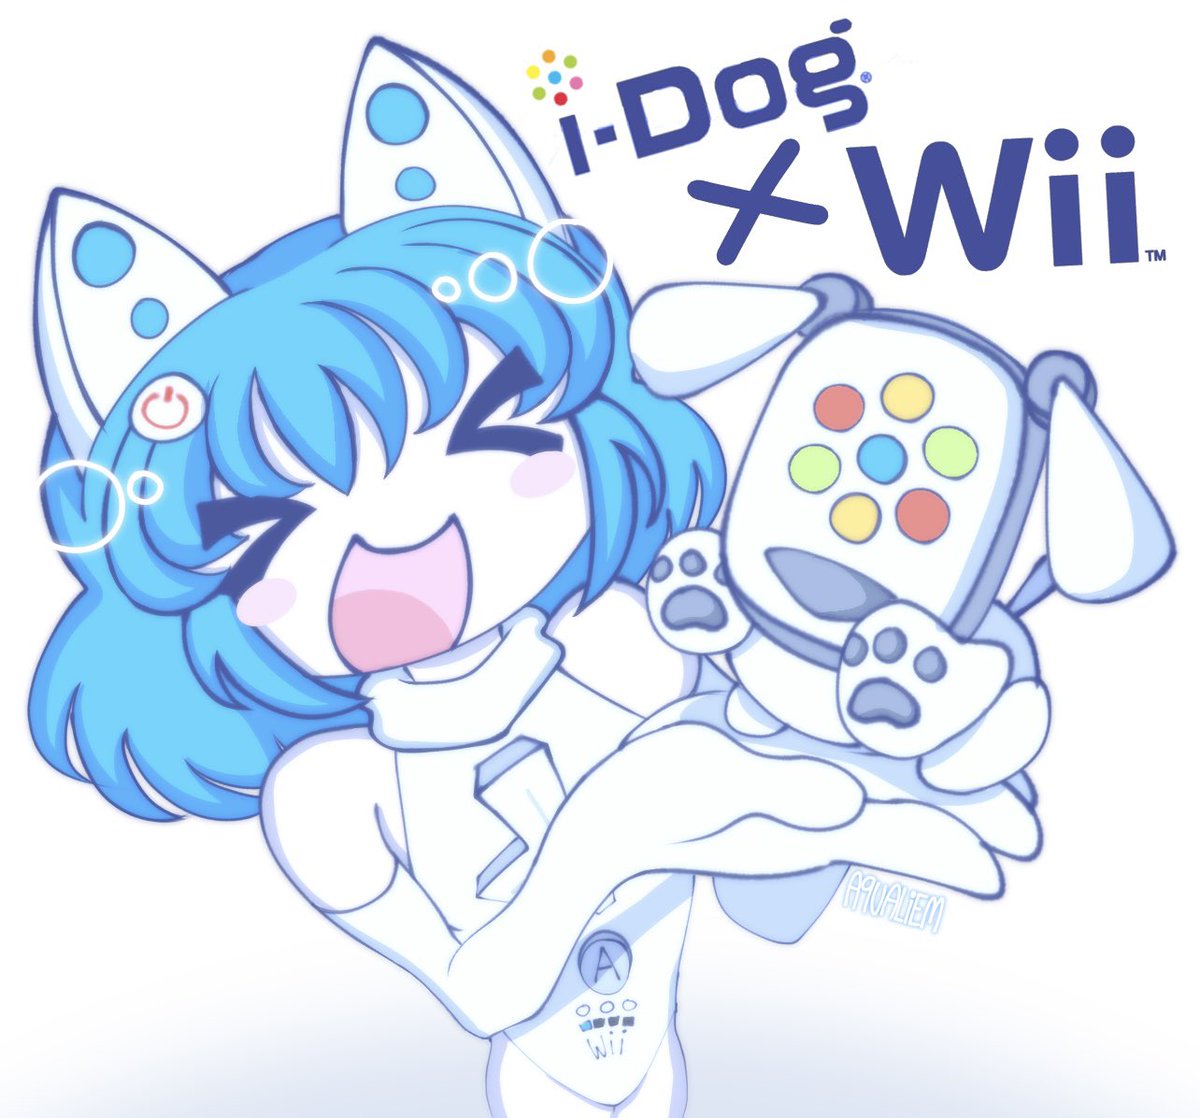 Wii mote girl meets i-dog #idog #nintendowii #ocart